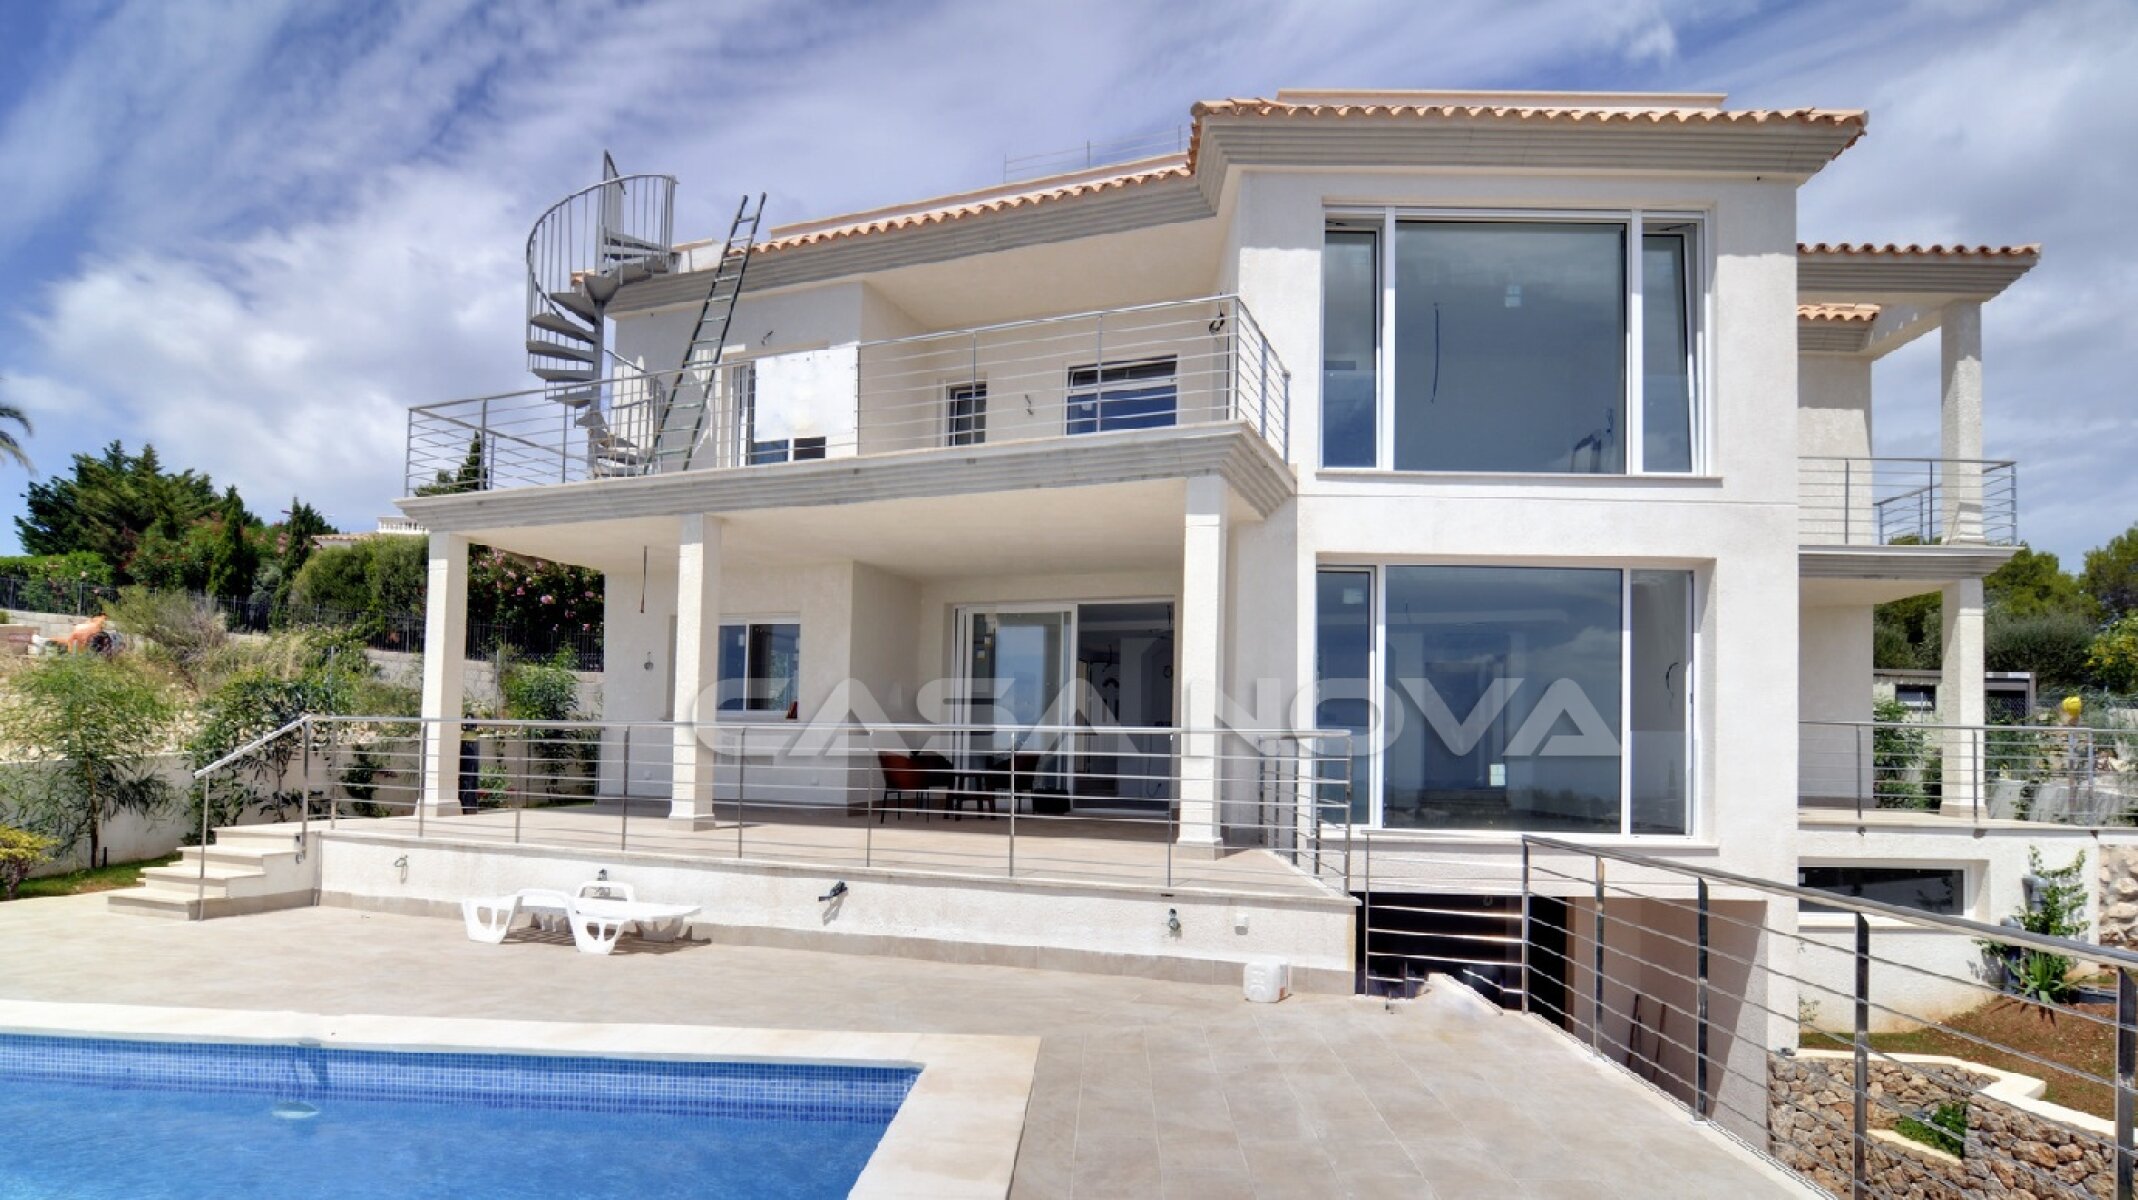 View of the modern Mallorca Villa 